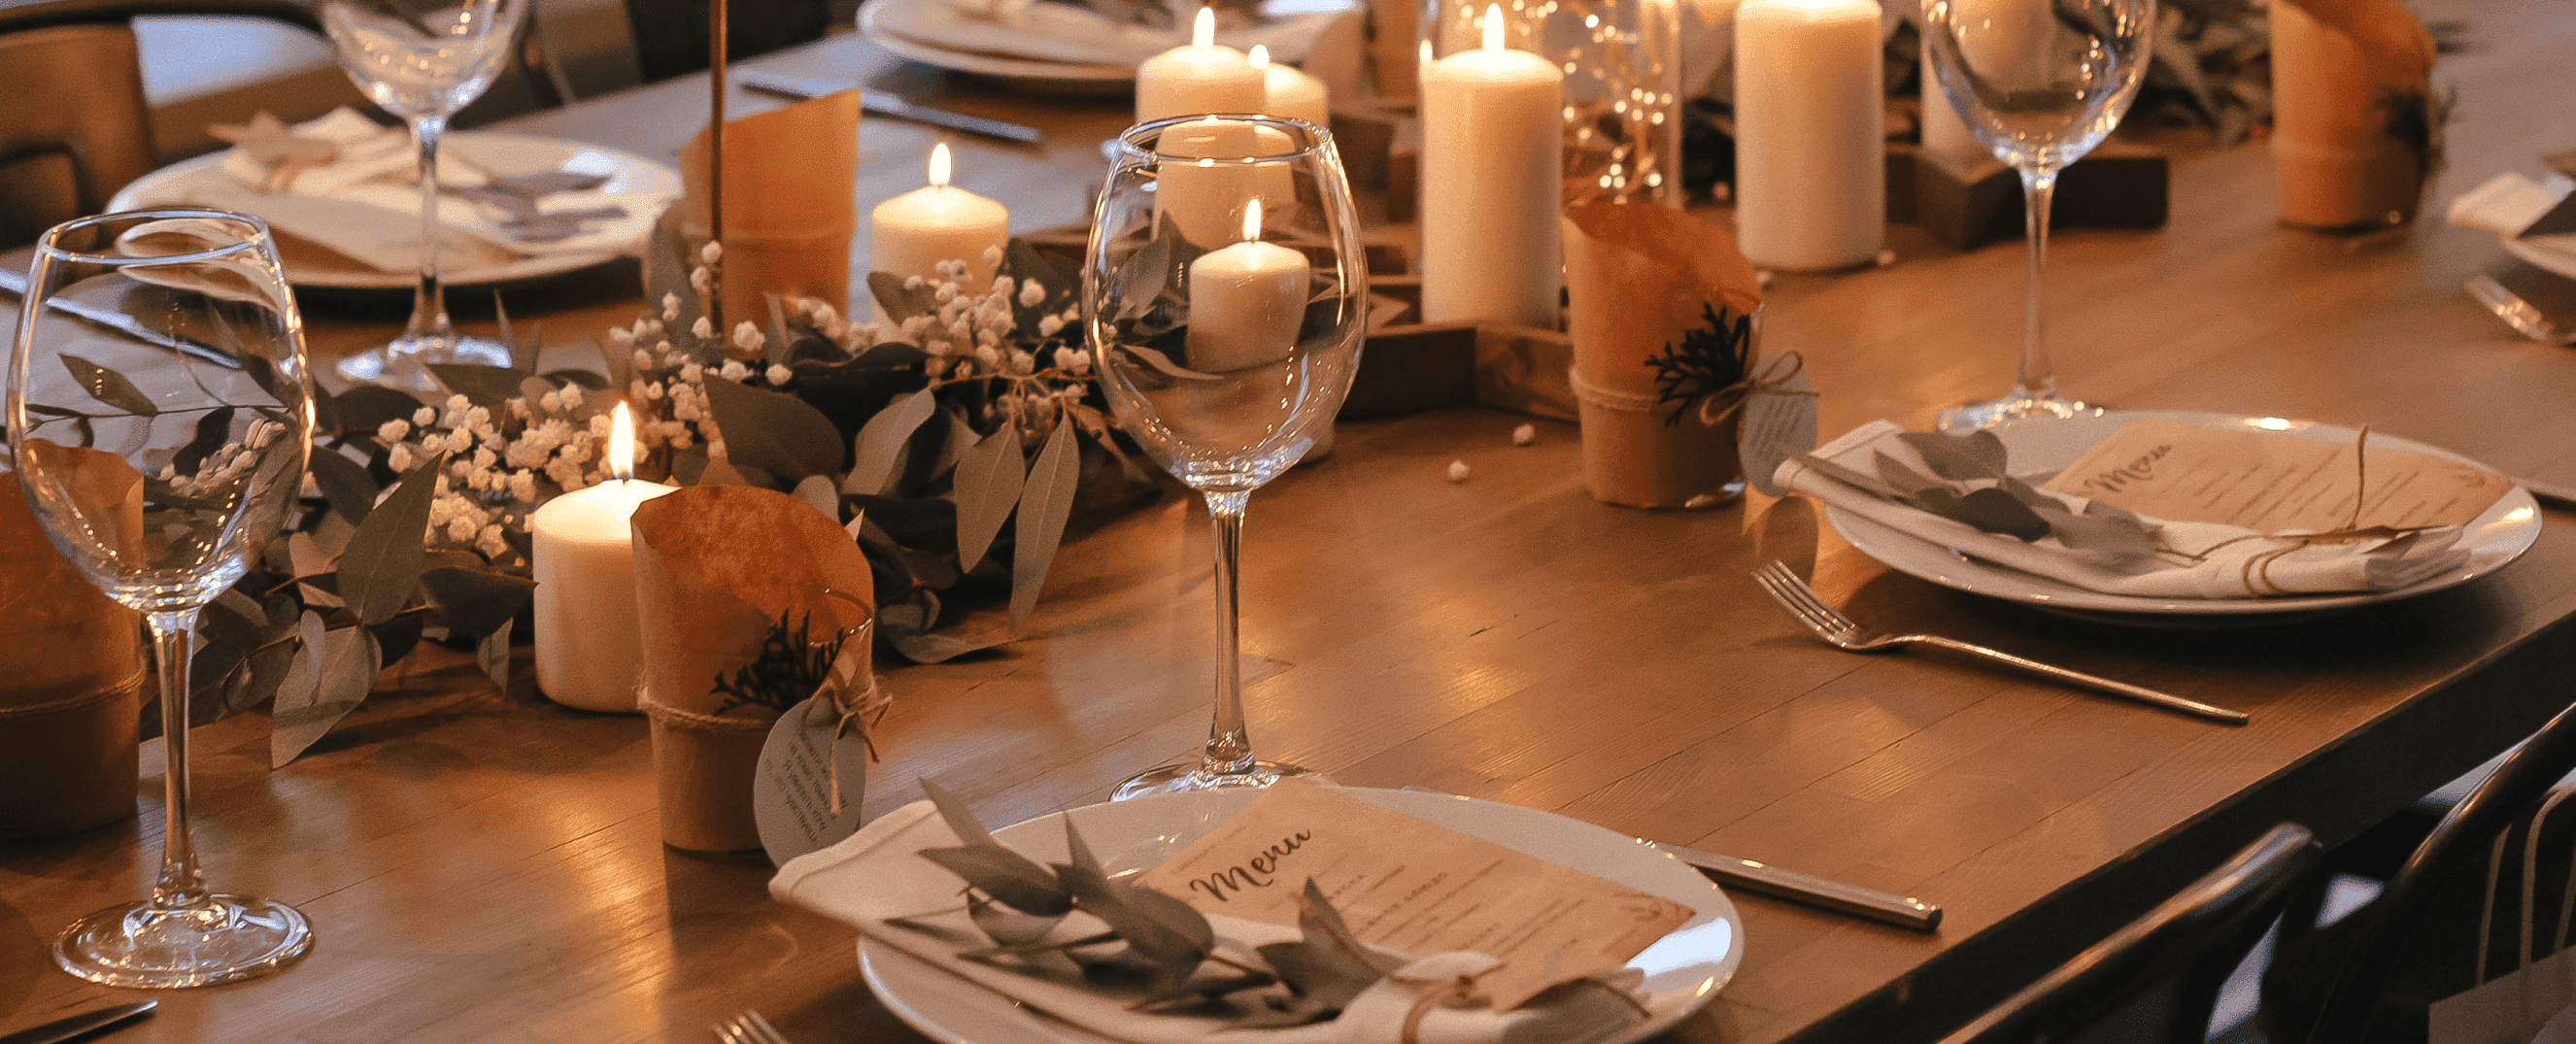 Mesa de jantar decorada Ano Novo com pegada de estilo de vida sustentável